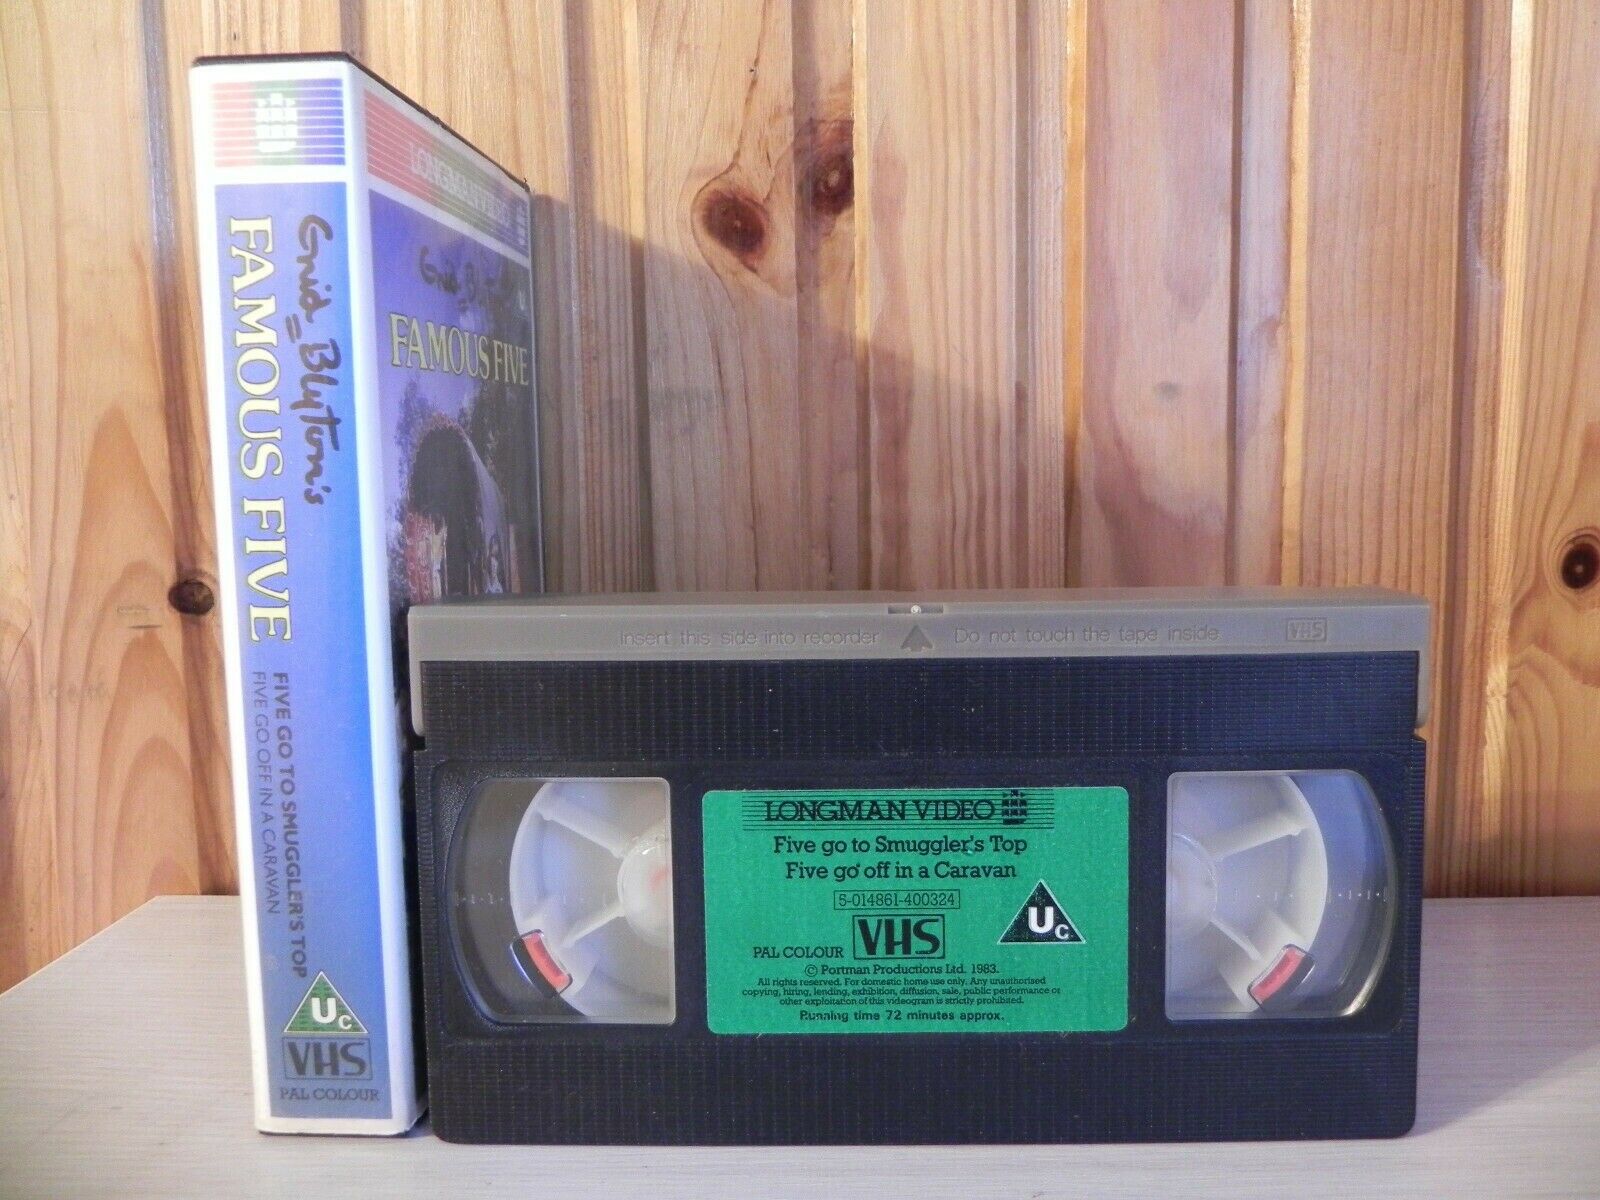 Famous Five: Go To Smuggler's Top - Based On Enid Blyton Novel - Kids - Pal VHS-